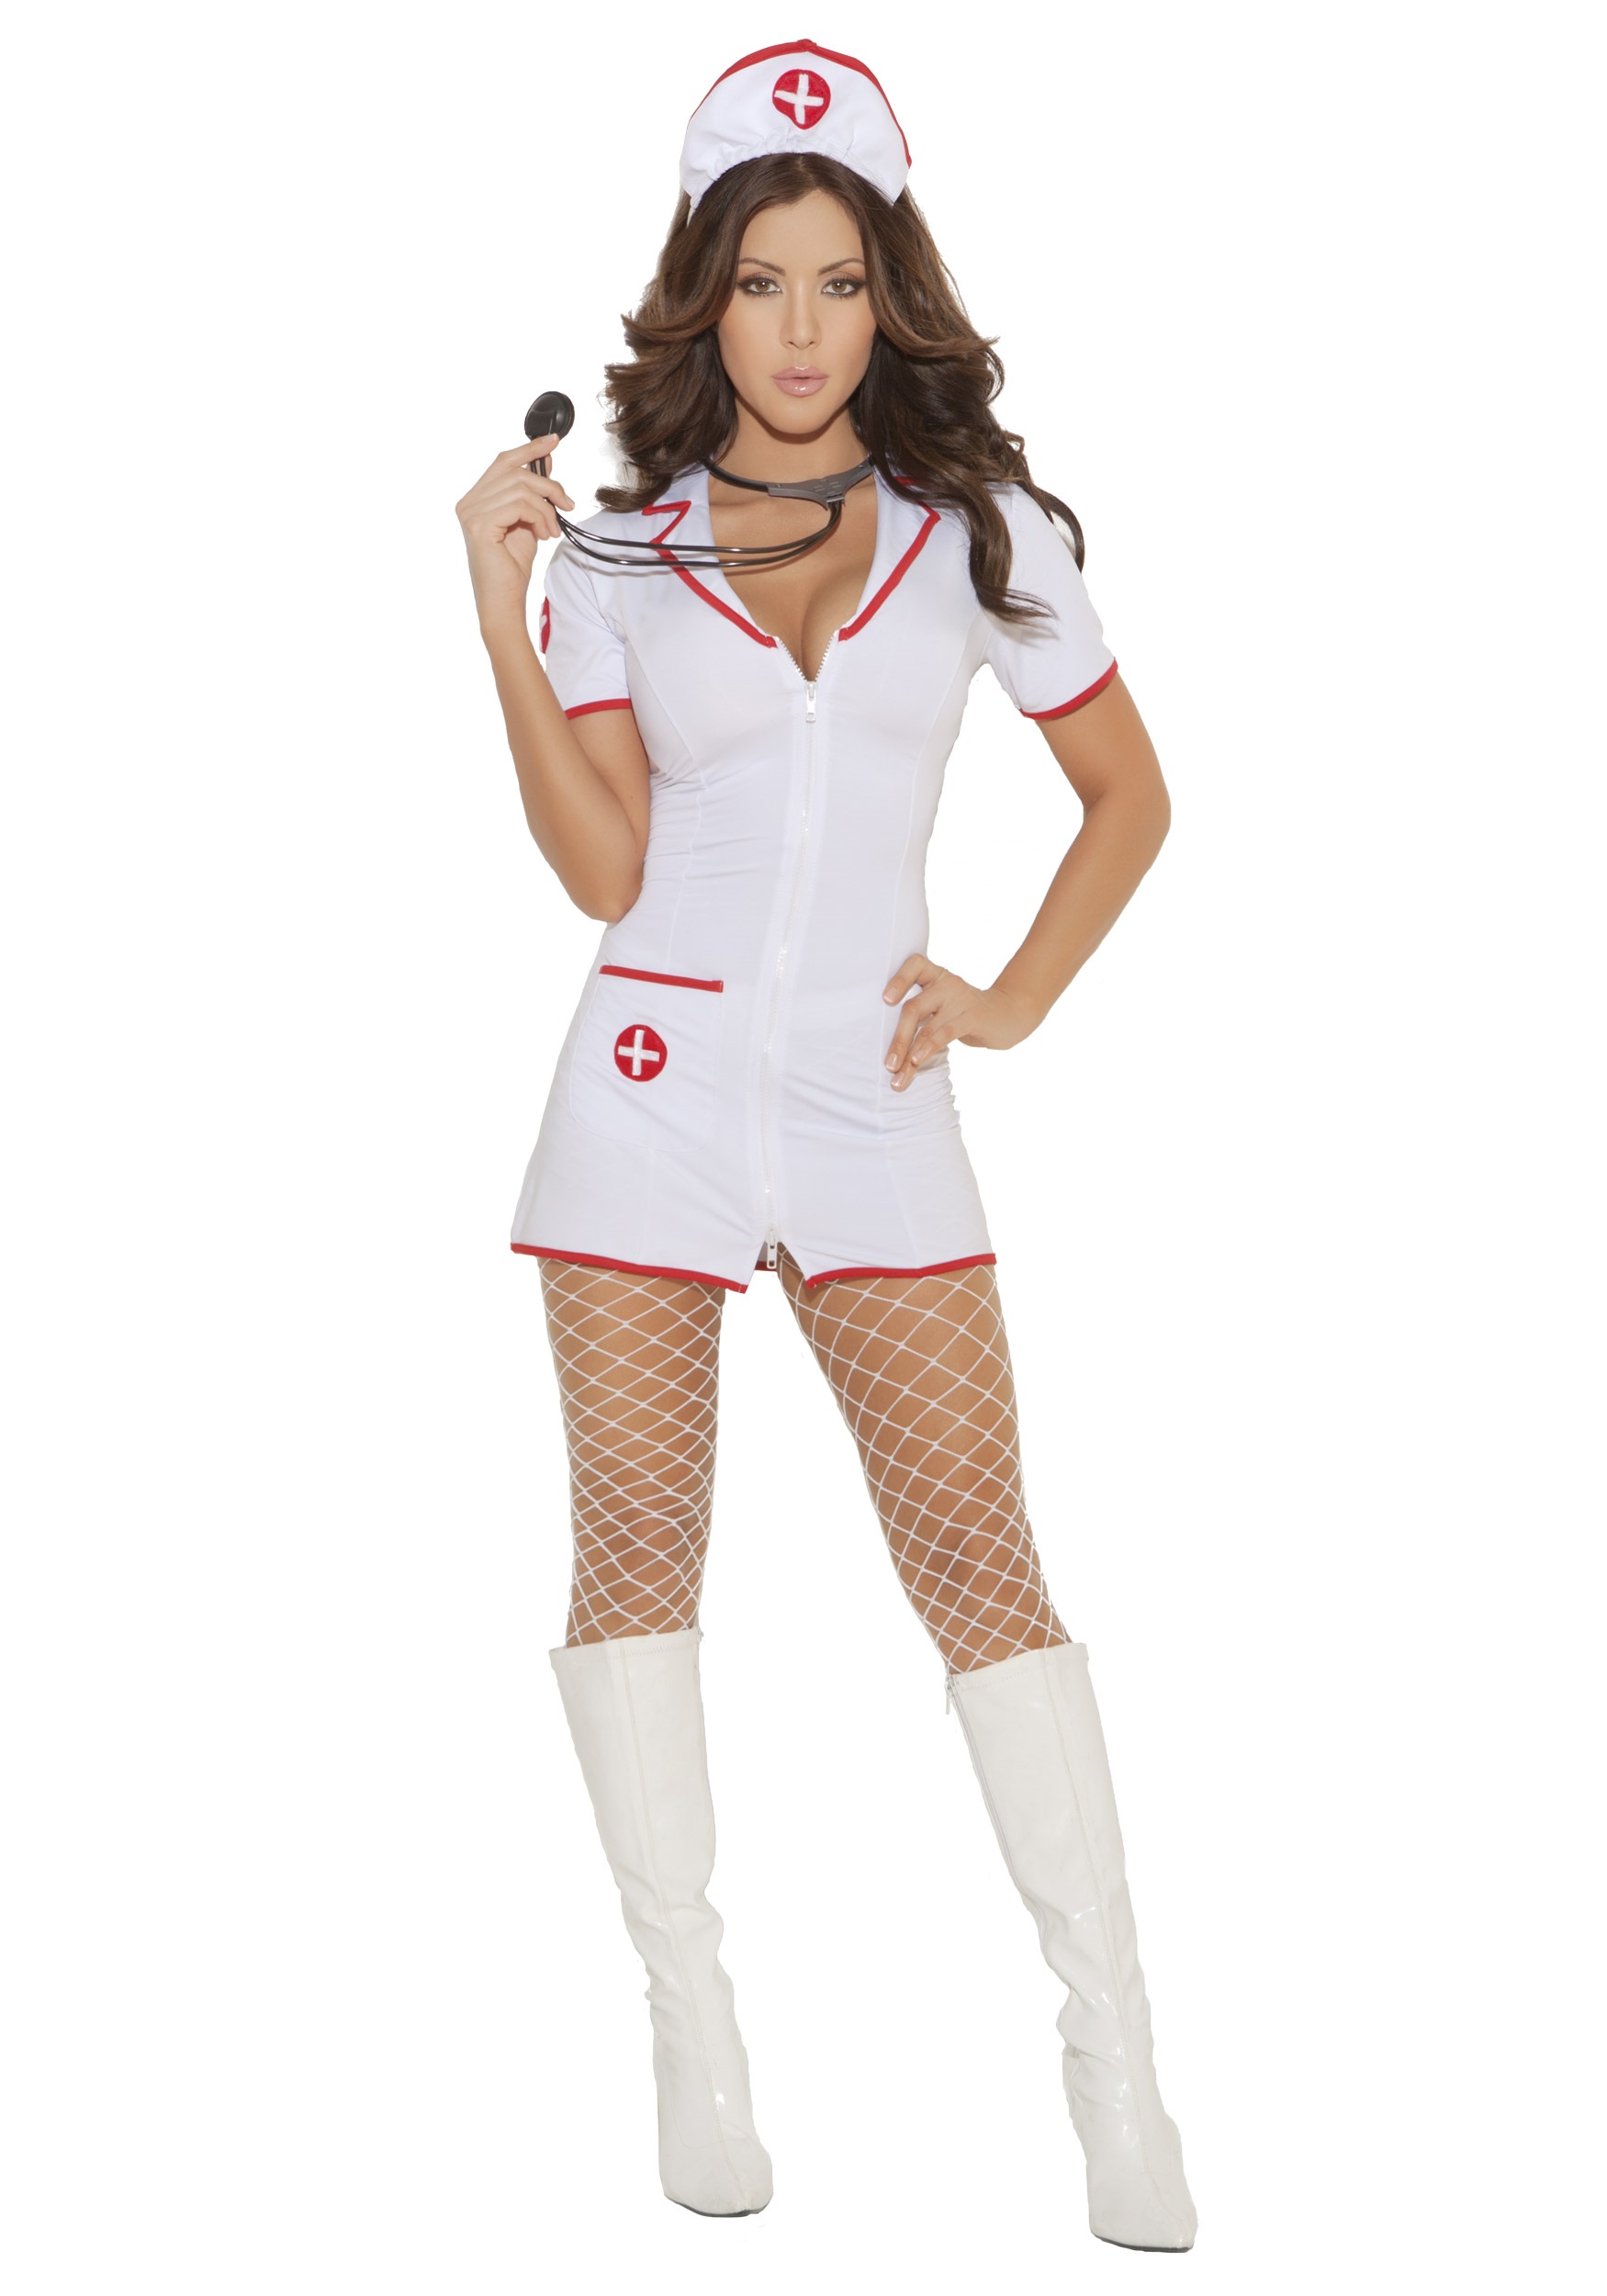 Head Nurse Fancy Dress Costume For Women W/ Hat And White Dress